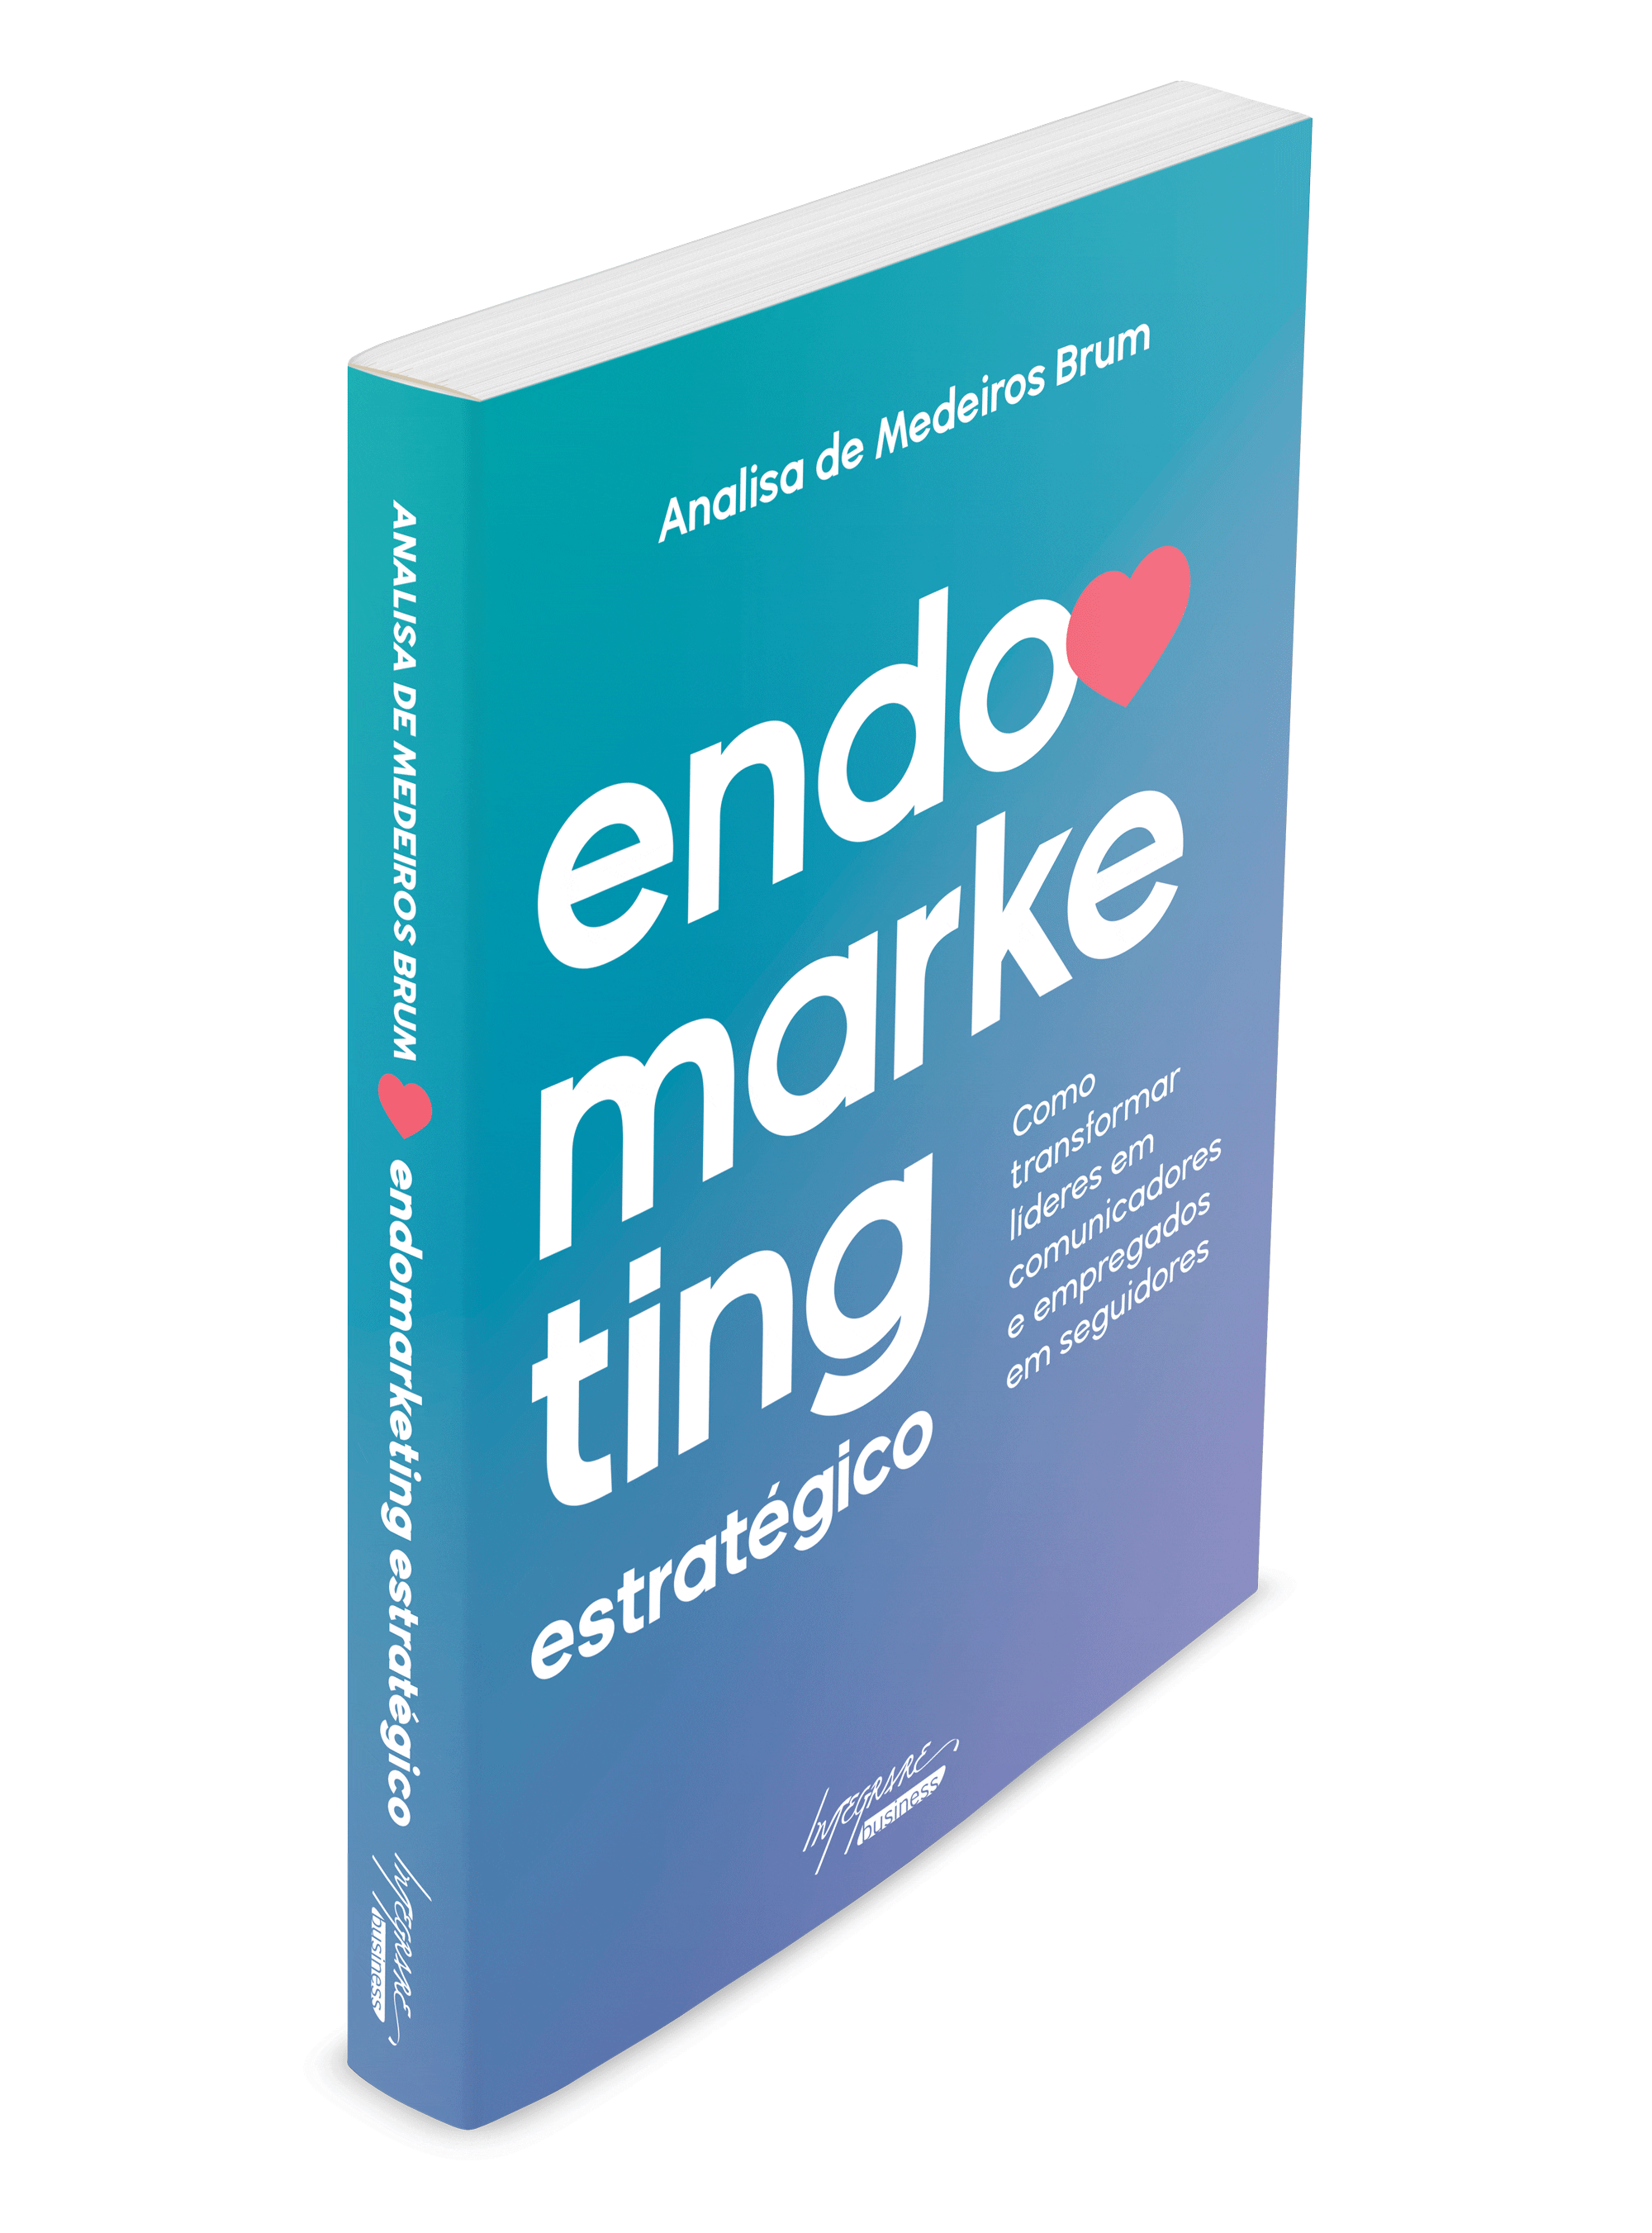 Capa do livro "Endomarketing Estratégico" de Analisa de Medeiros Brum